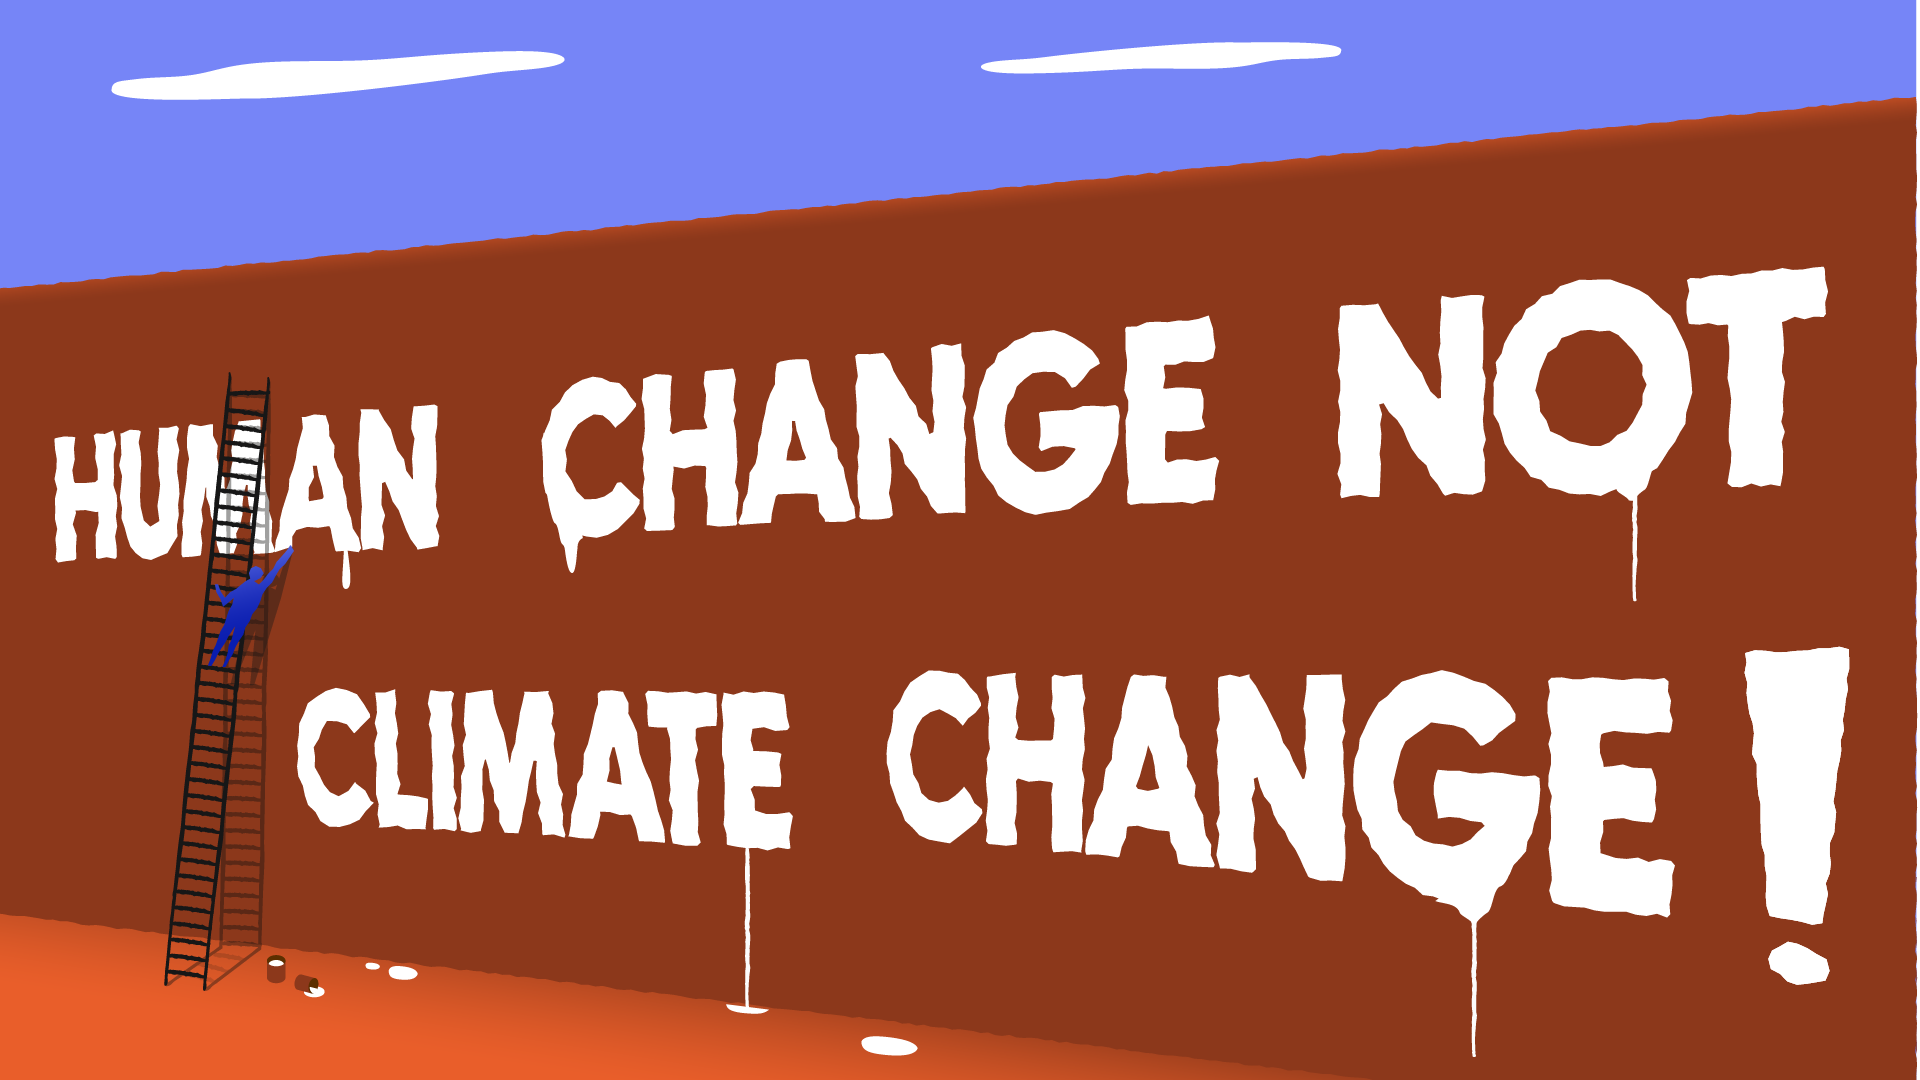 Op een muur zijn de woorden Human change not climate change! geverfd. We zien een persoon met een ladder en verf tegen de muur aanstaan